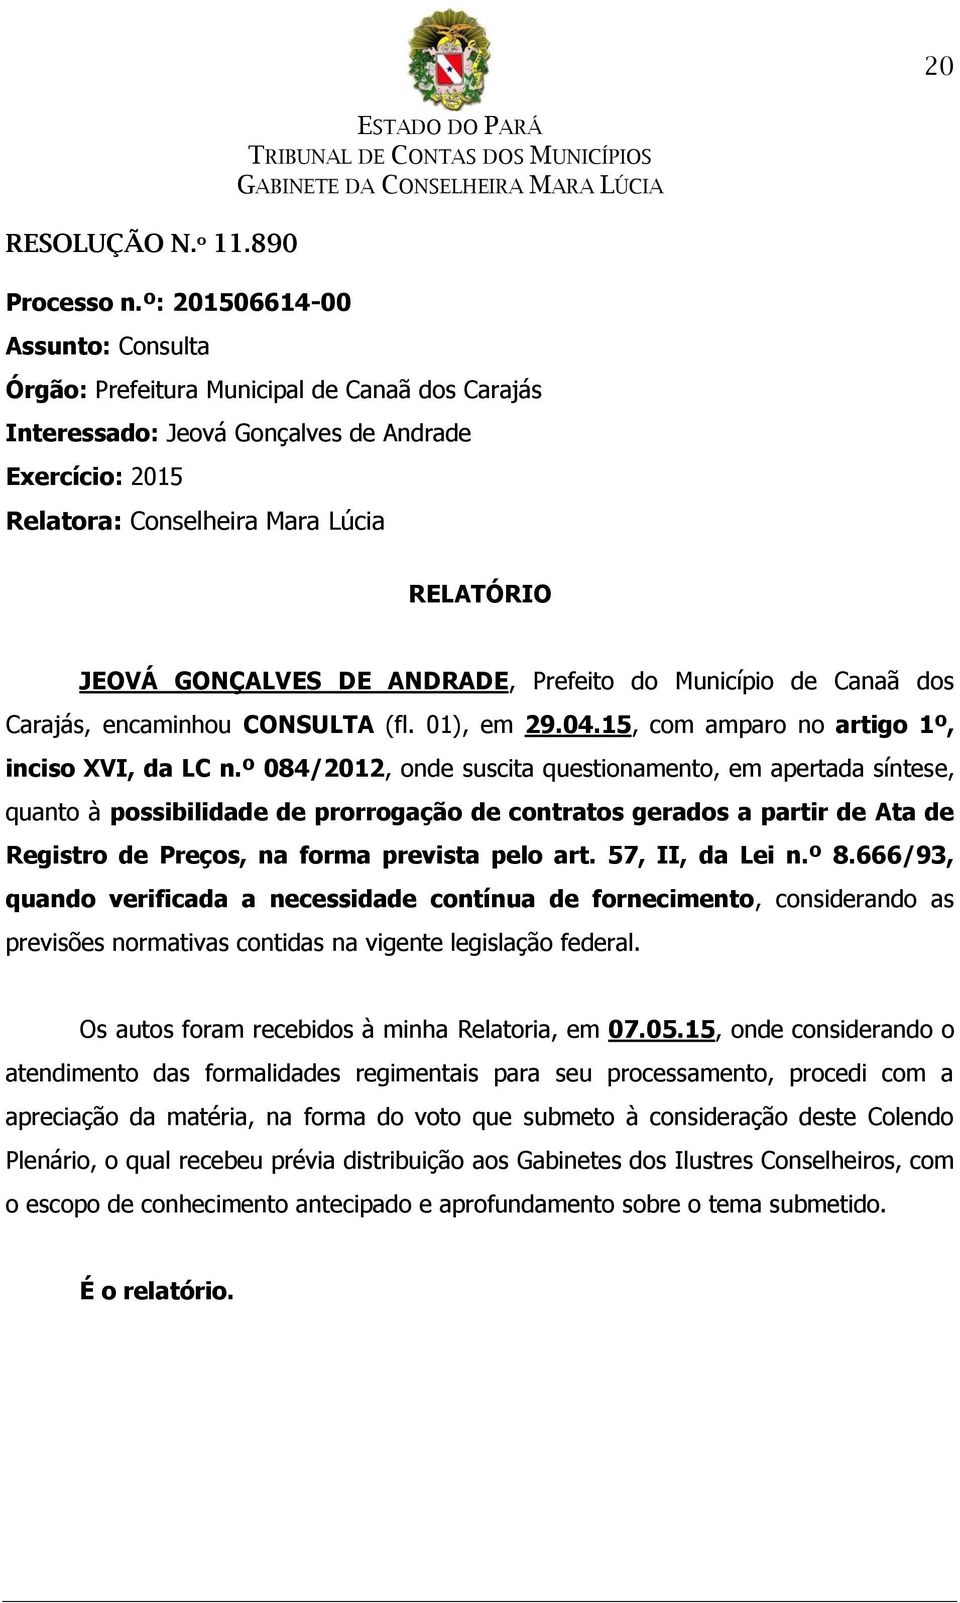 DE ANDRADE, Prefeito do Município de Canaã dos Carajás, encaminhou CONSULTA (fl. 01), em 29.04.15, com amparo no artigo 1º, inciso XVI, da LC n.